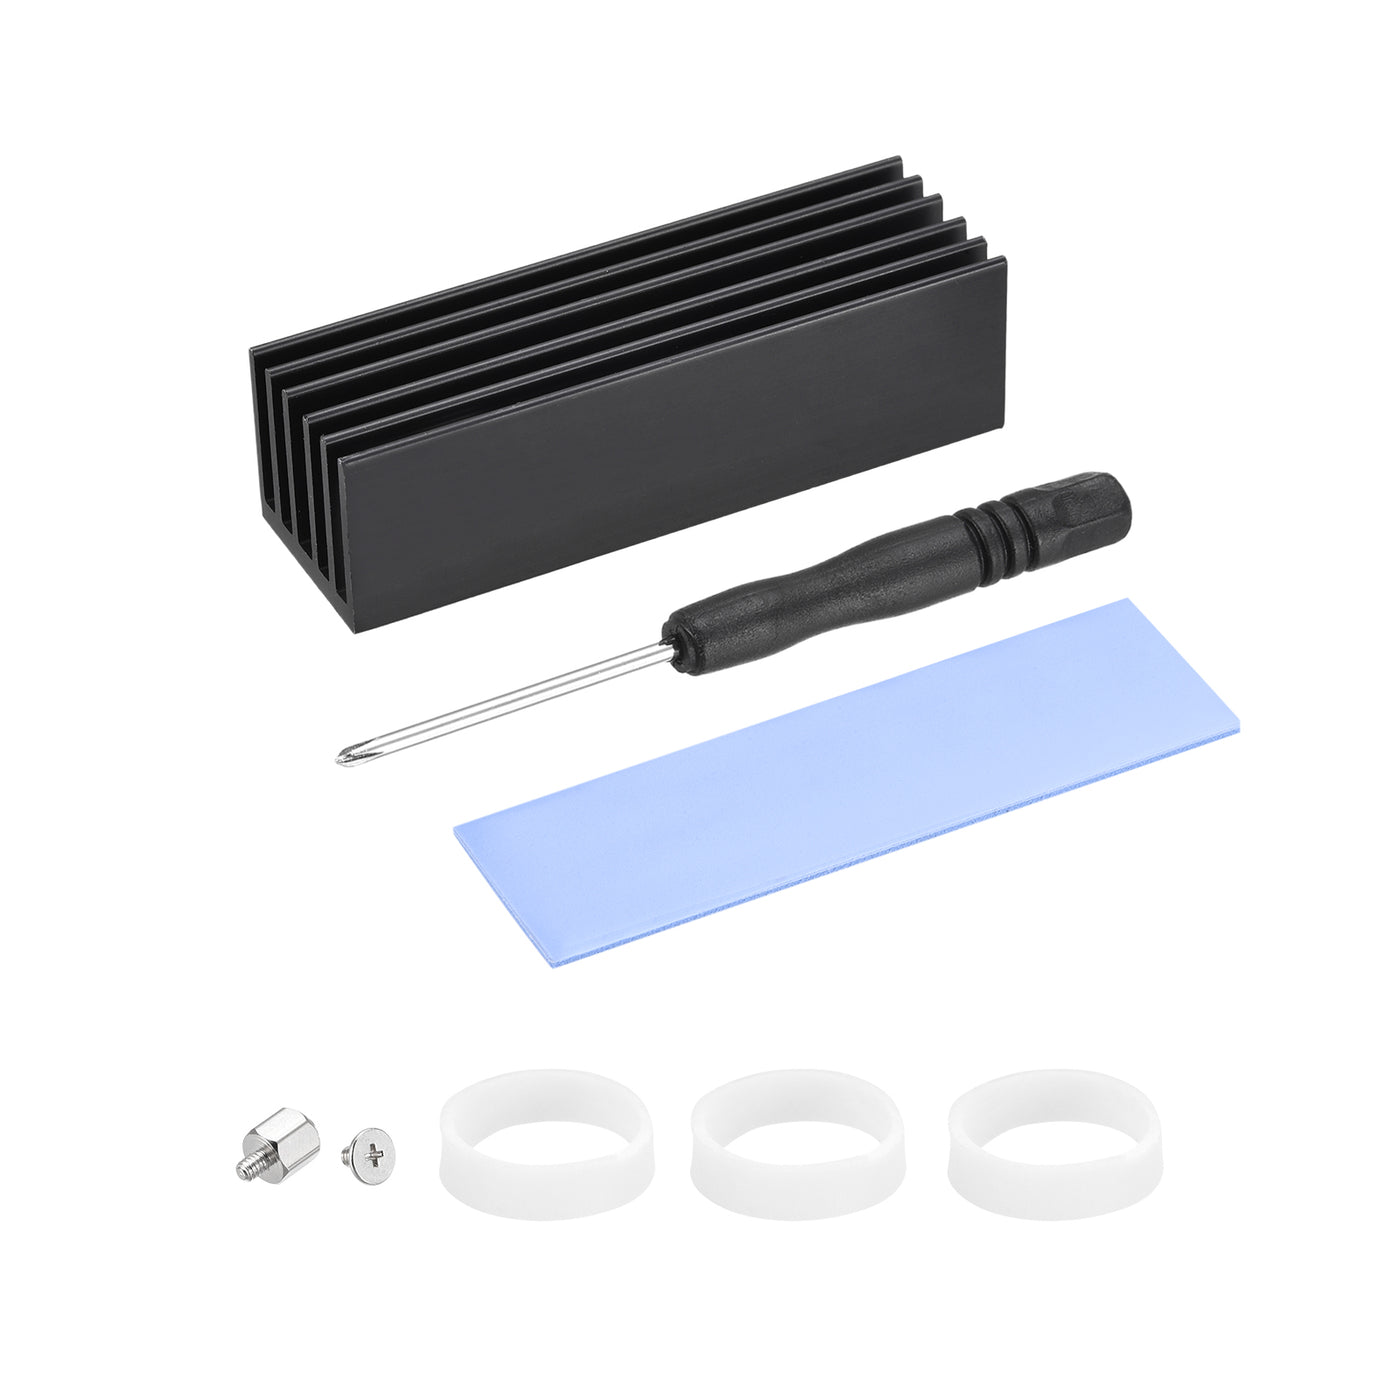 Harfington Aluminum Heatsink Black 70x22x20mm W Tools and 1 x Pre-Cut Thermal Pad for SSD